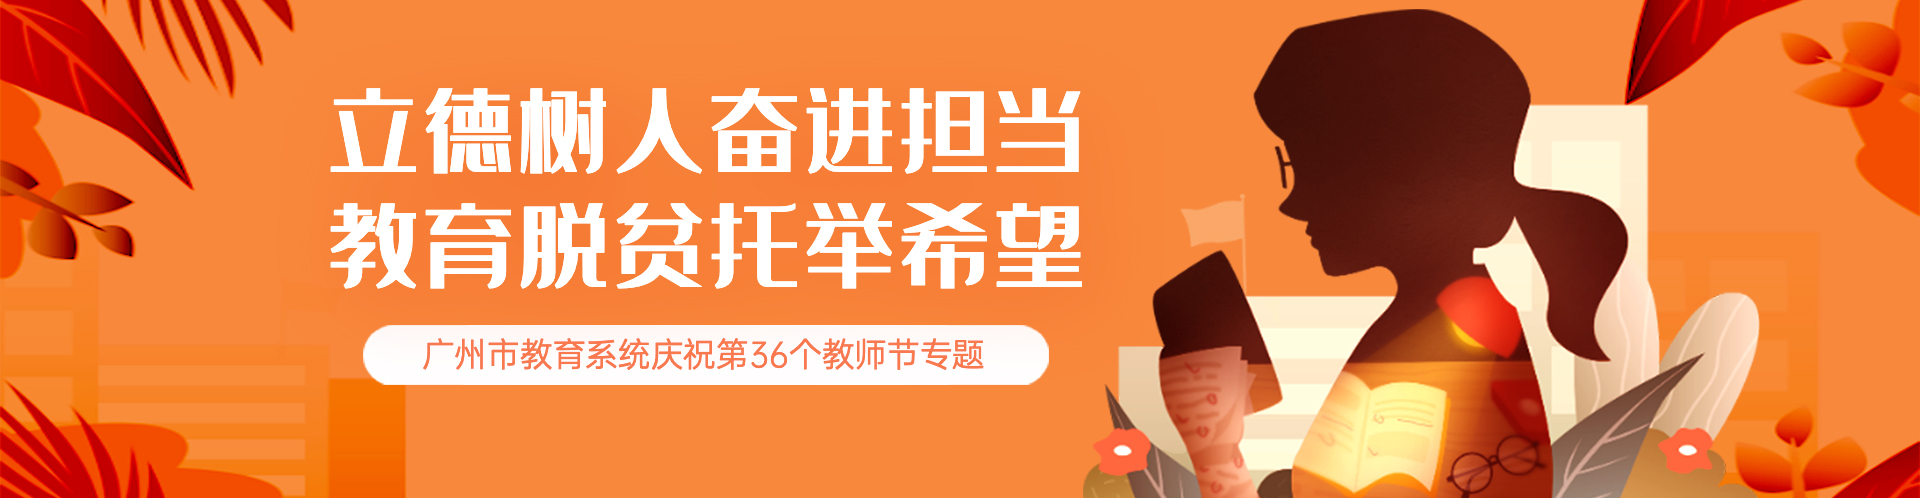 立德树人奋进担当教育脱贫托举希望广州市教育系统庆祝第36个教师节专题